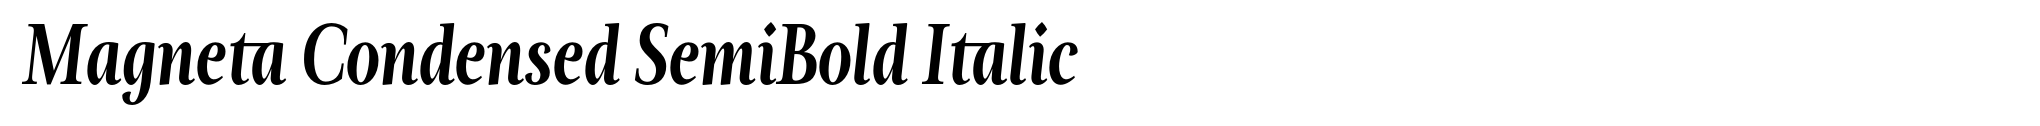 Magneta Condensed SemiBold Italic image